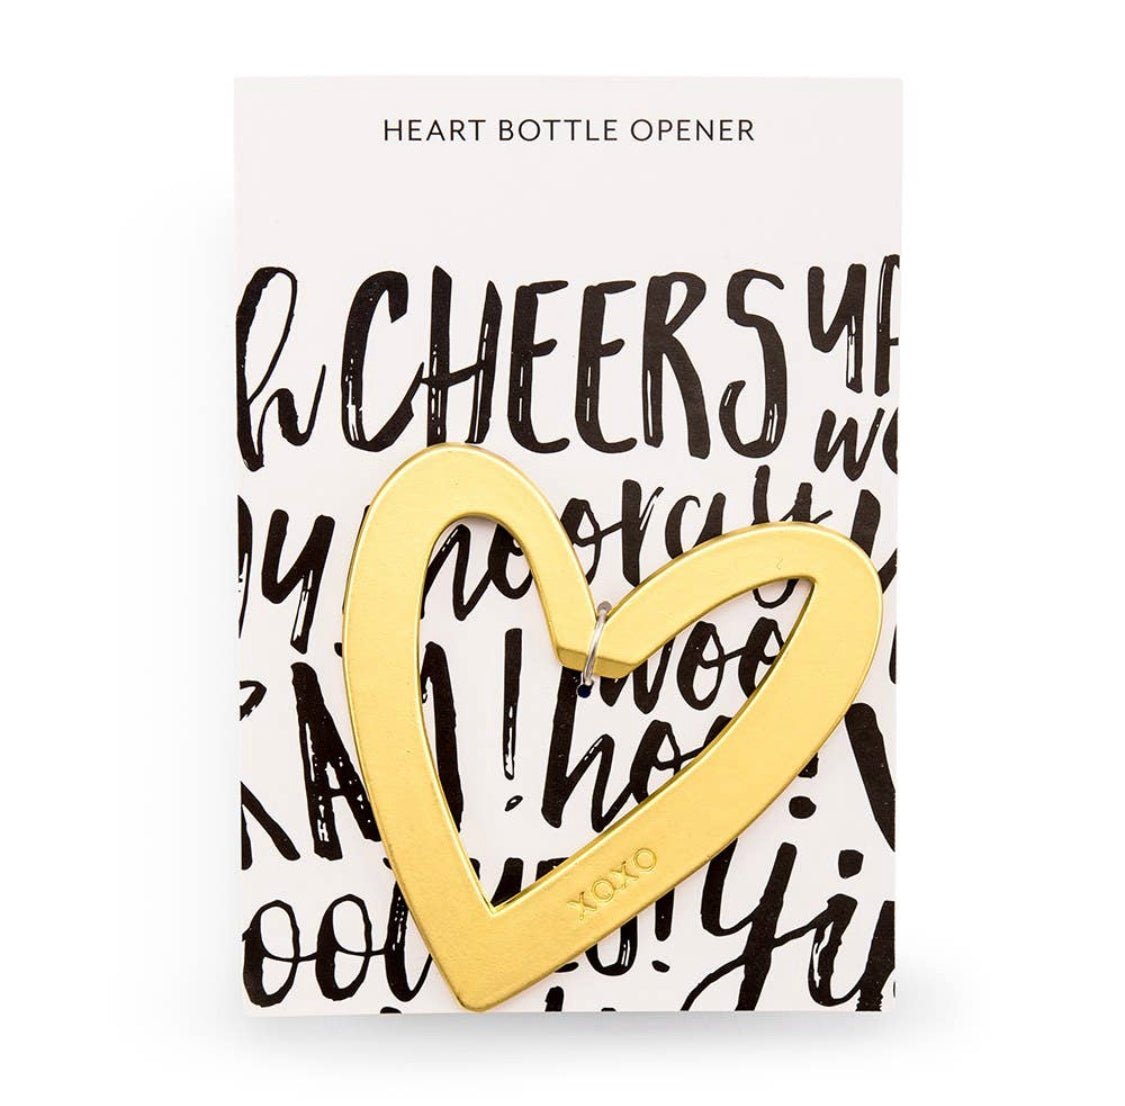 Heart Bottle Opener